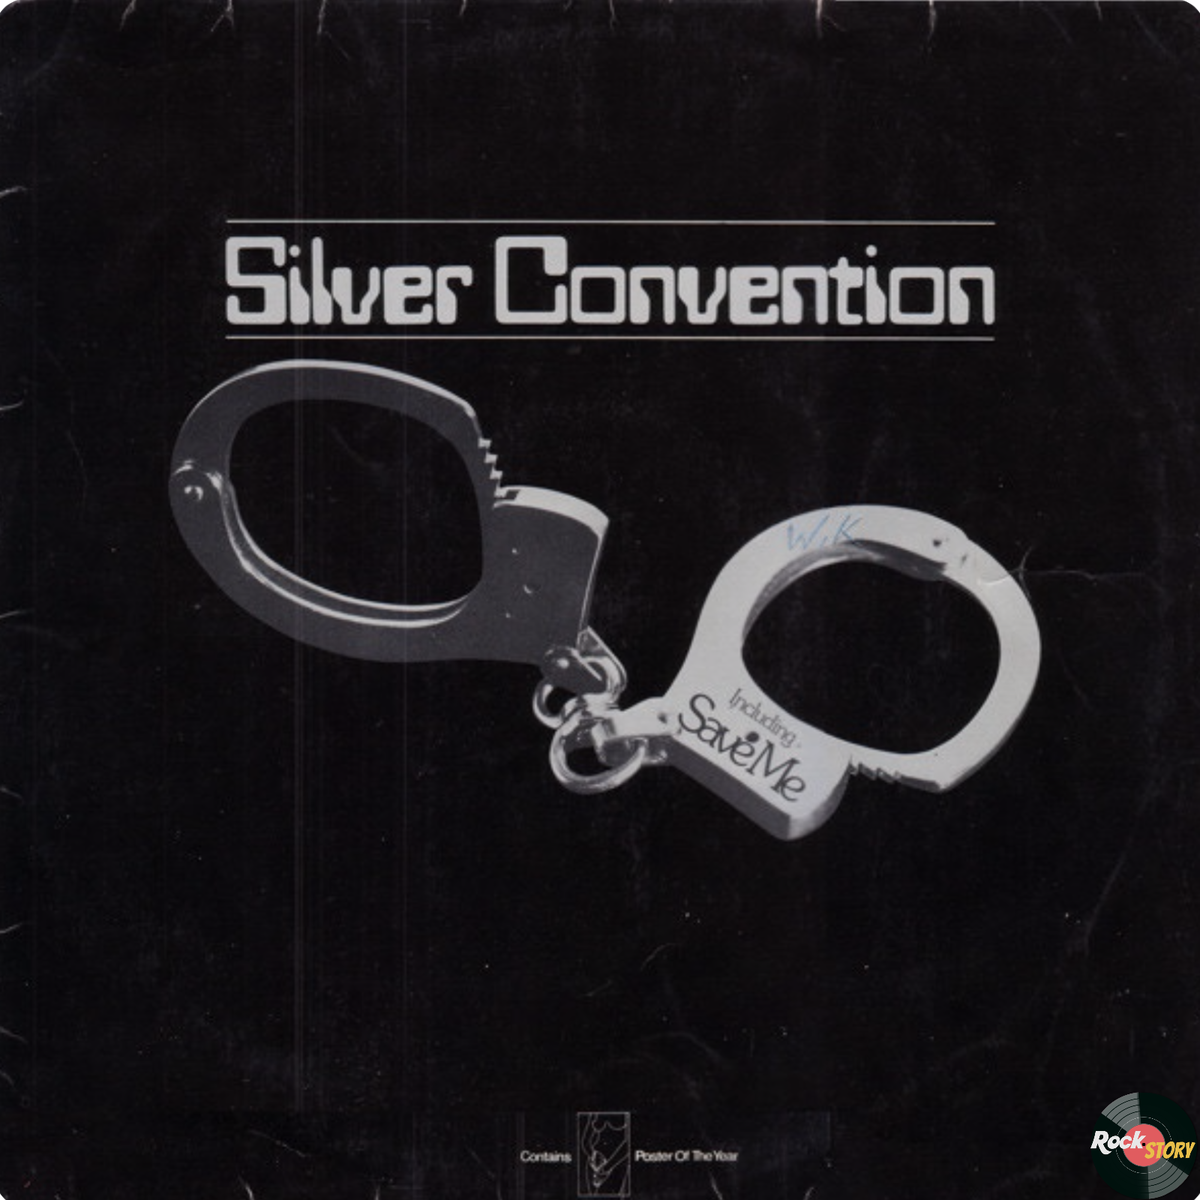 На фотографии: классический вариант обложки альбома Save Me группы Silver Convention.